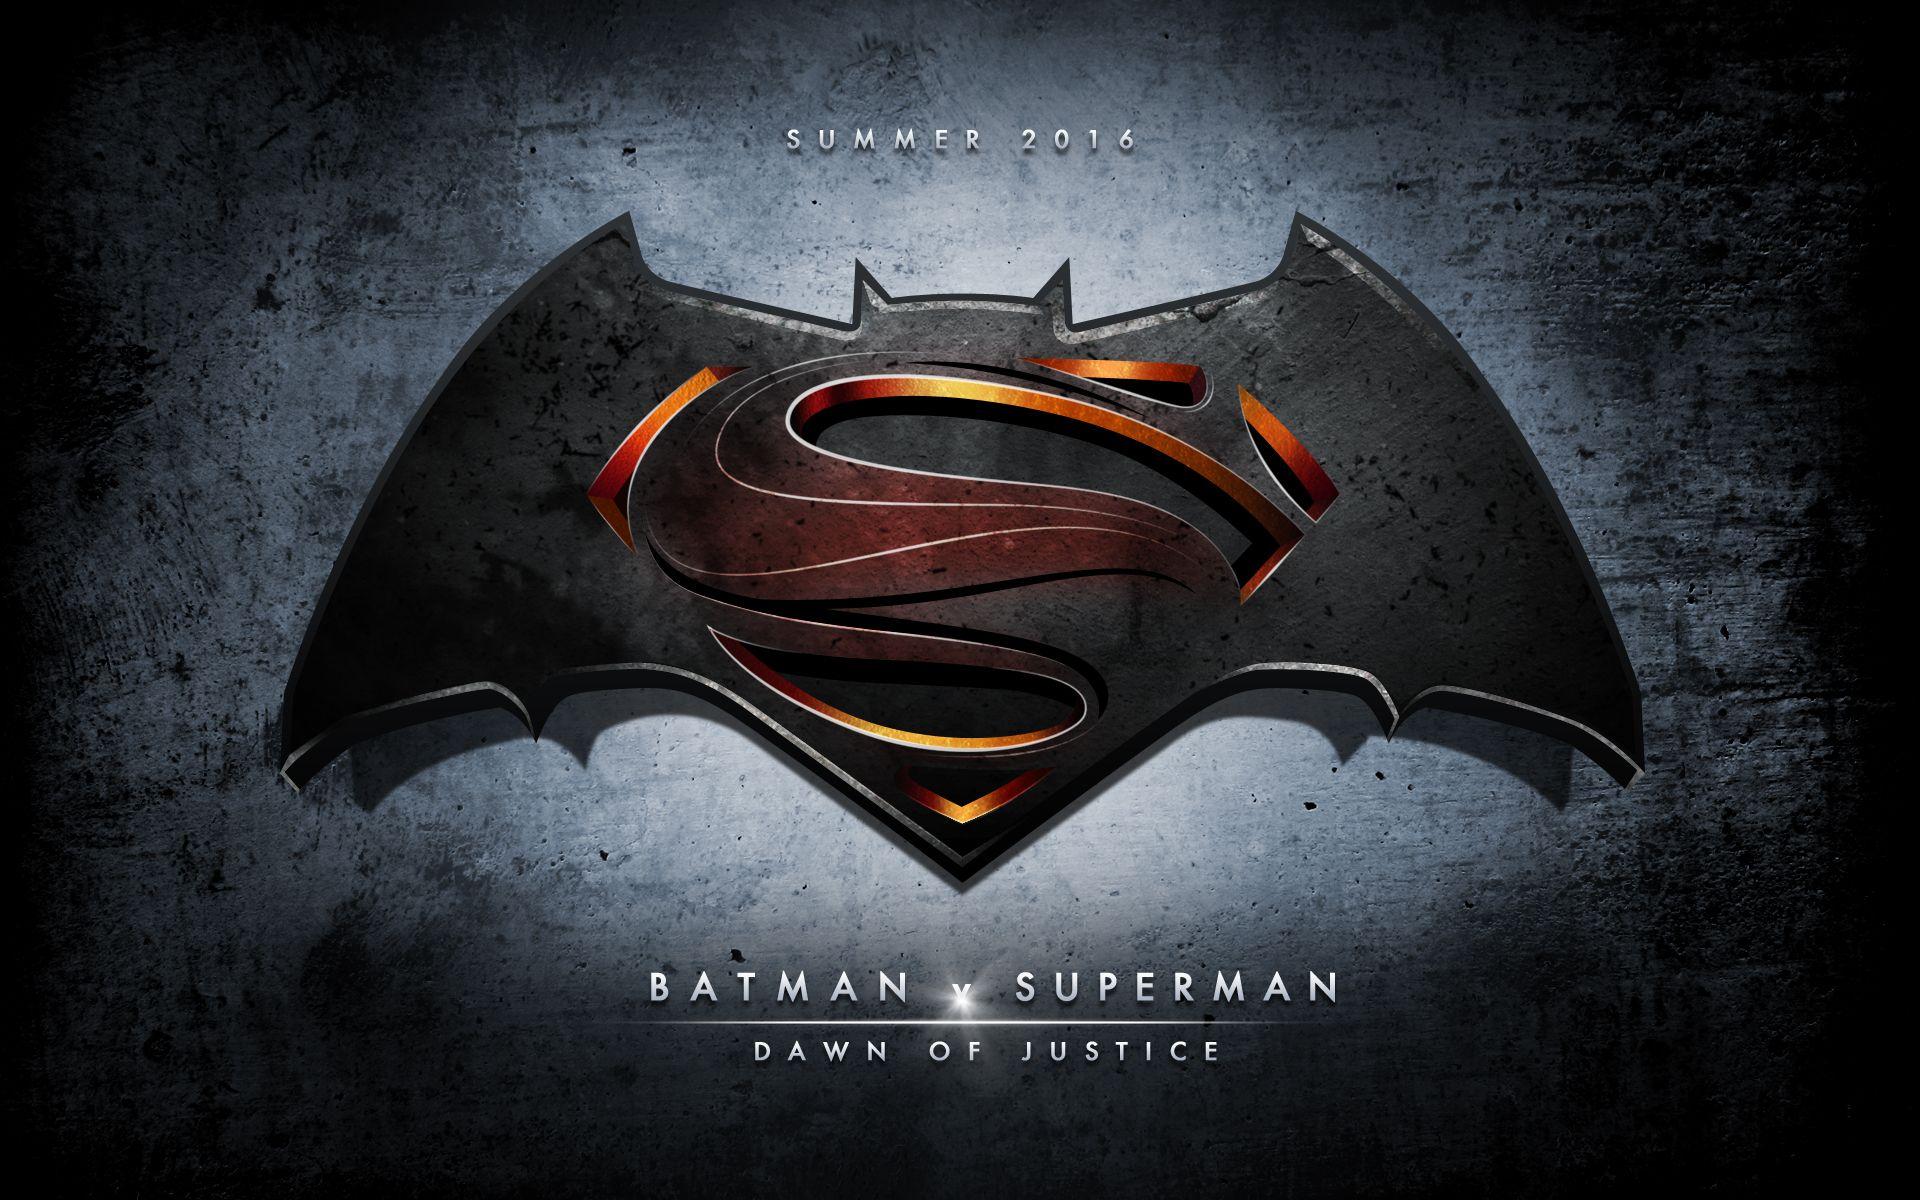 Batman V Superman Dawn of Justice Logo - Movie Review: Batman v Superman: Dawn of Justice - Bounding Into Comics